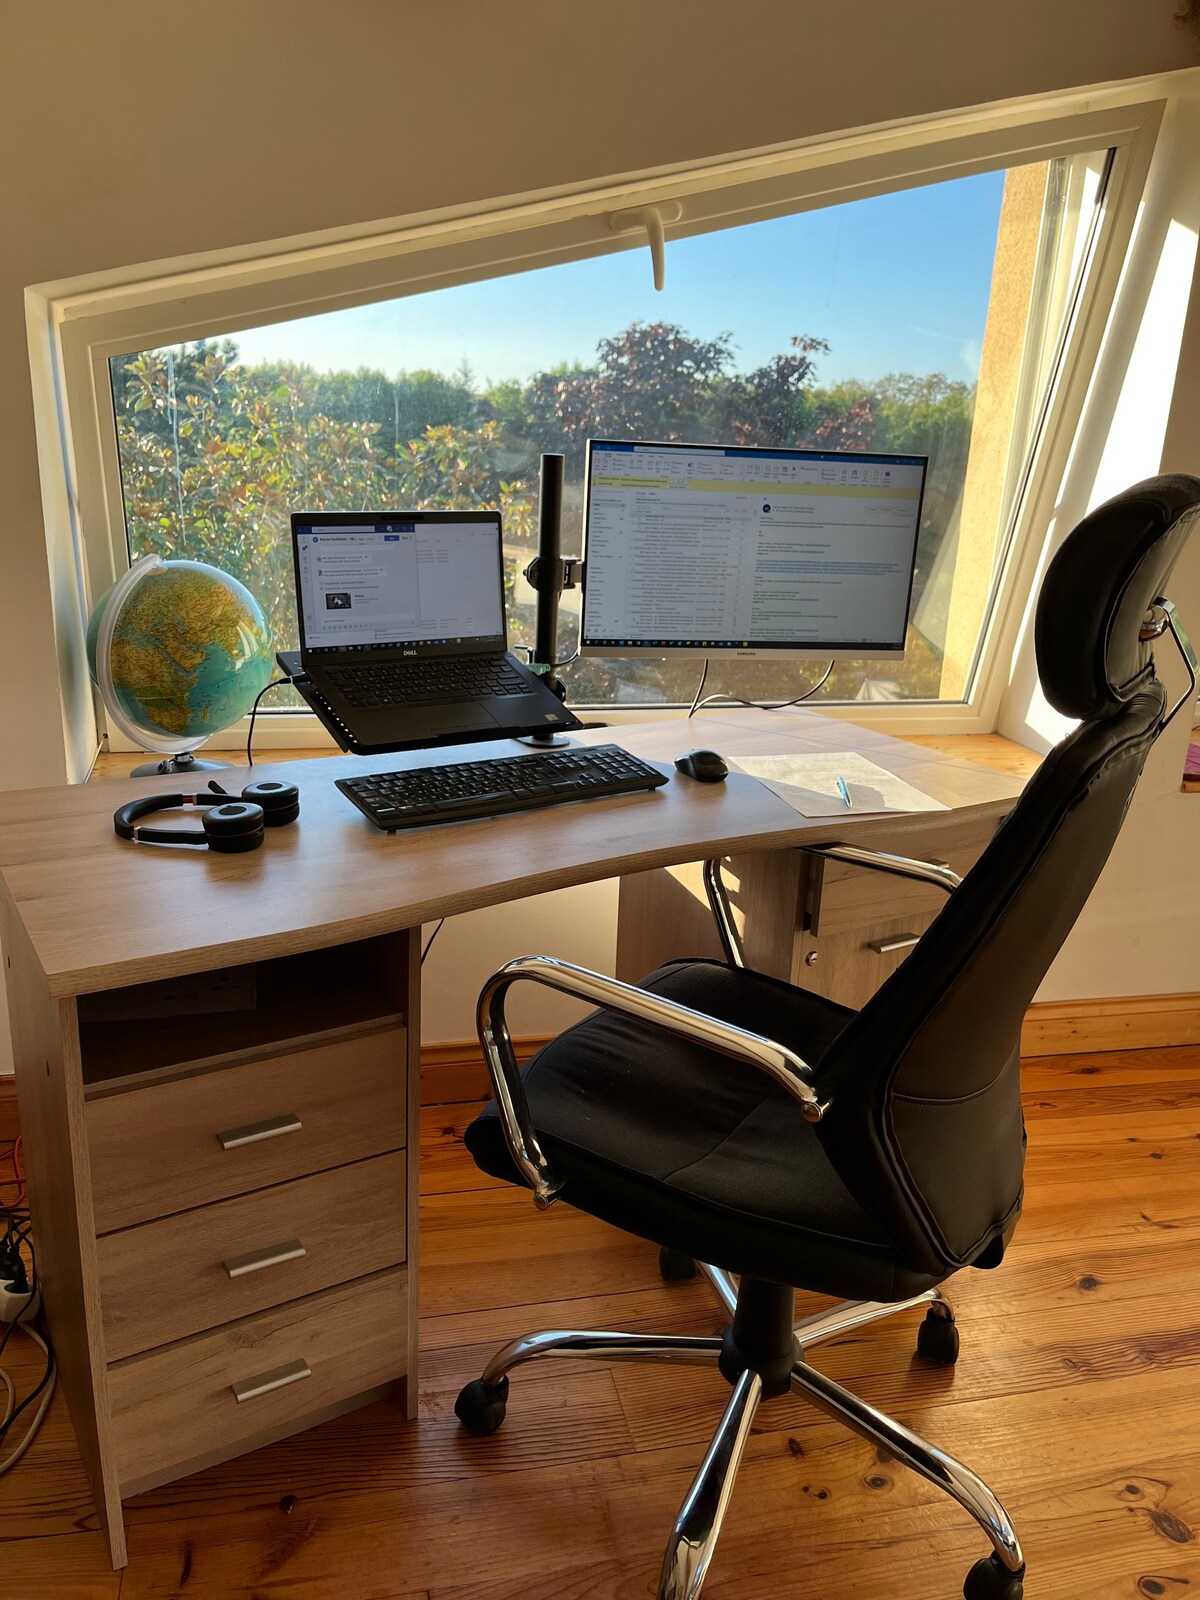 令人难以置信的葡萄园家庭逃脱+电脑办公桌